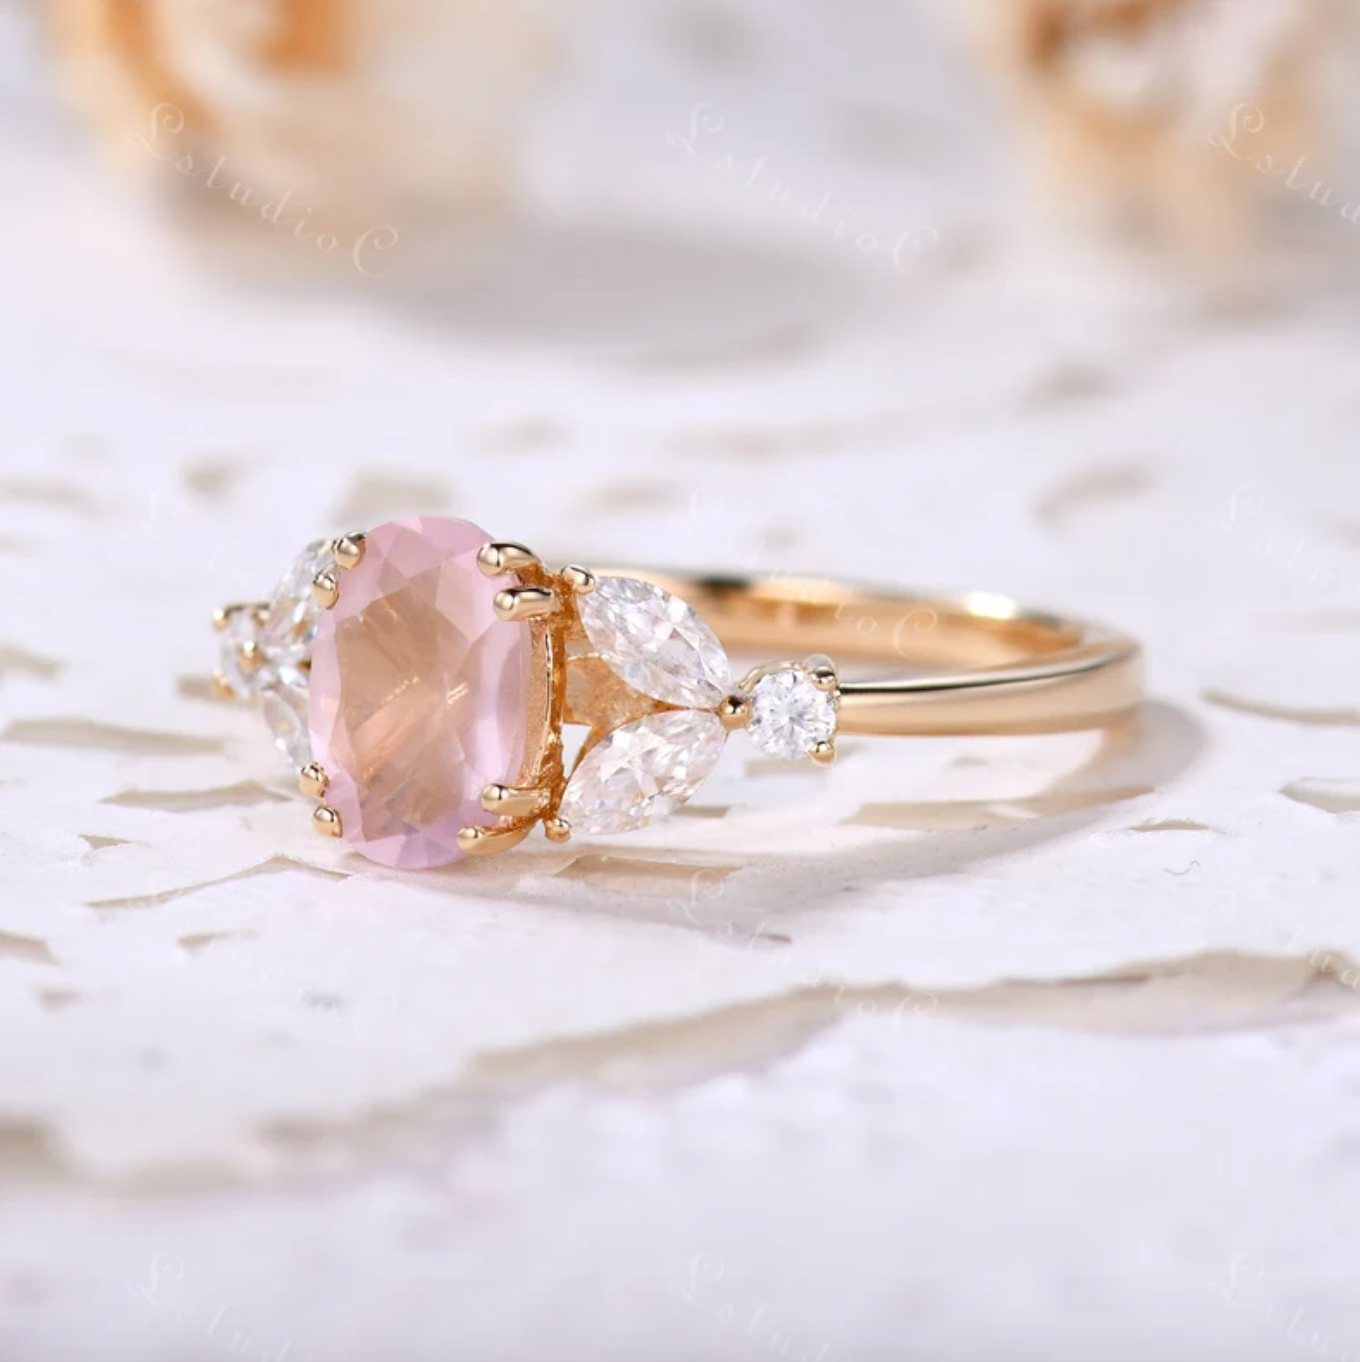 Image of the rose quartz ring 